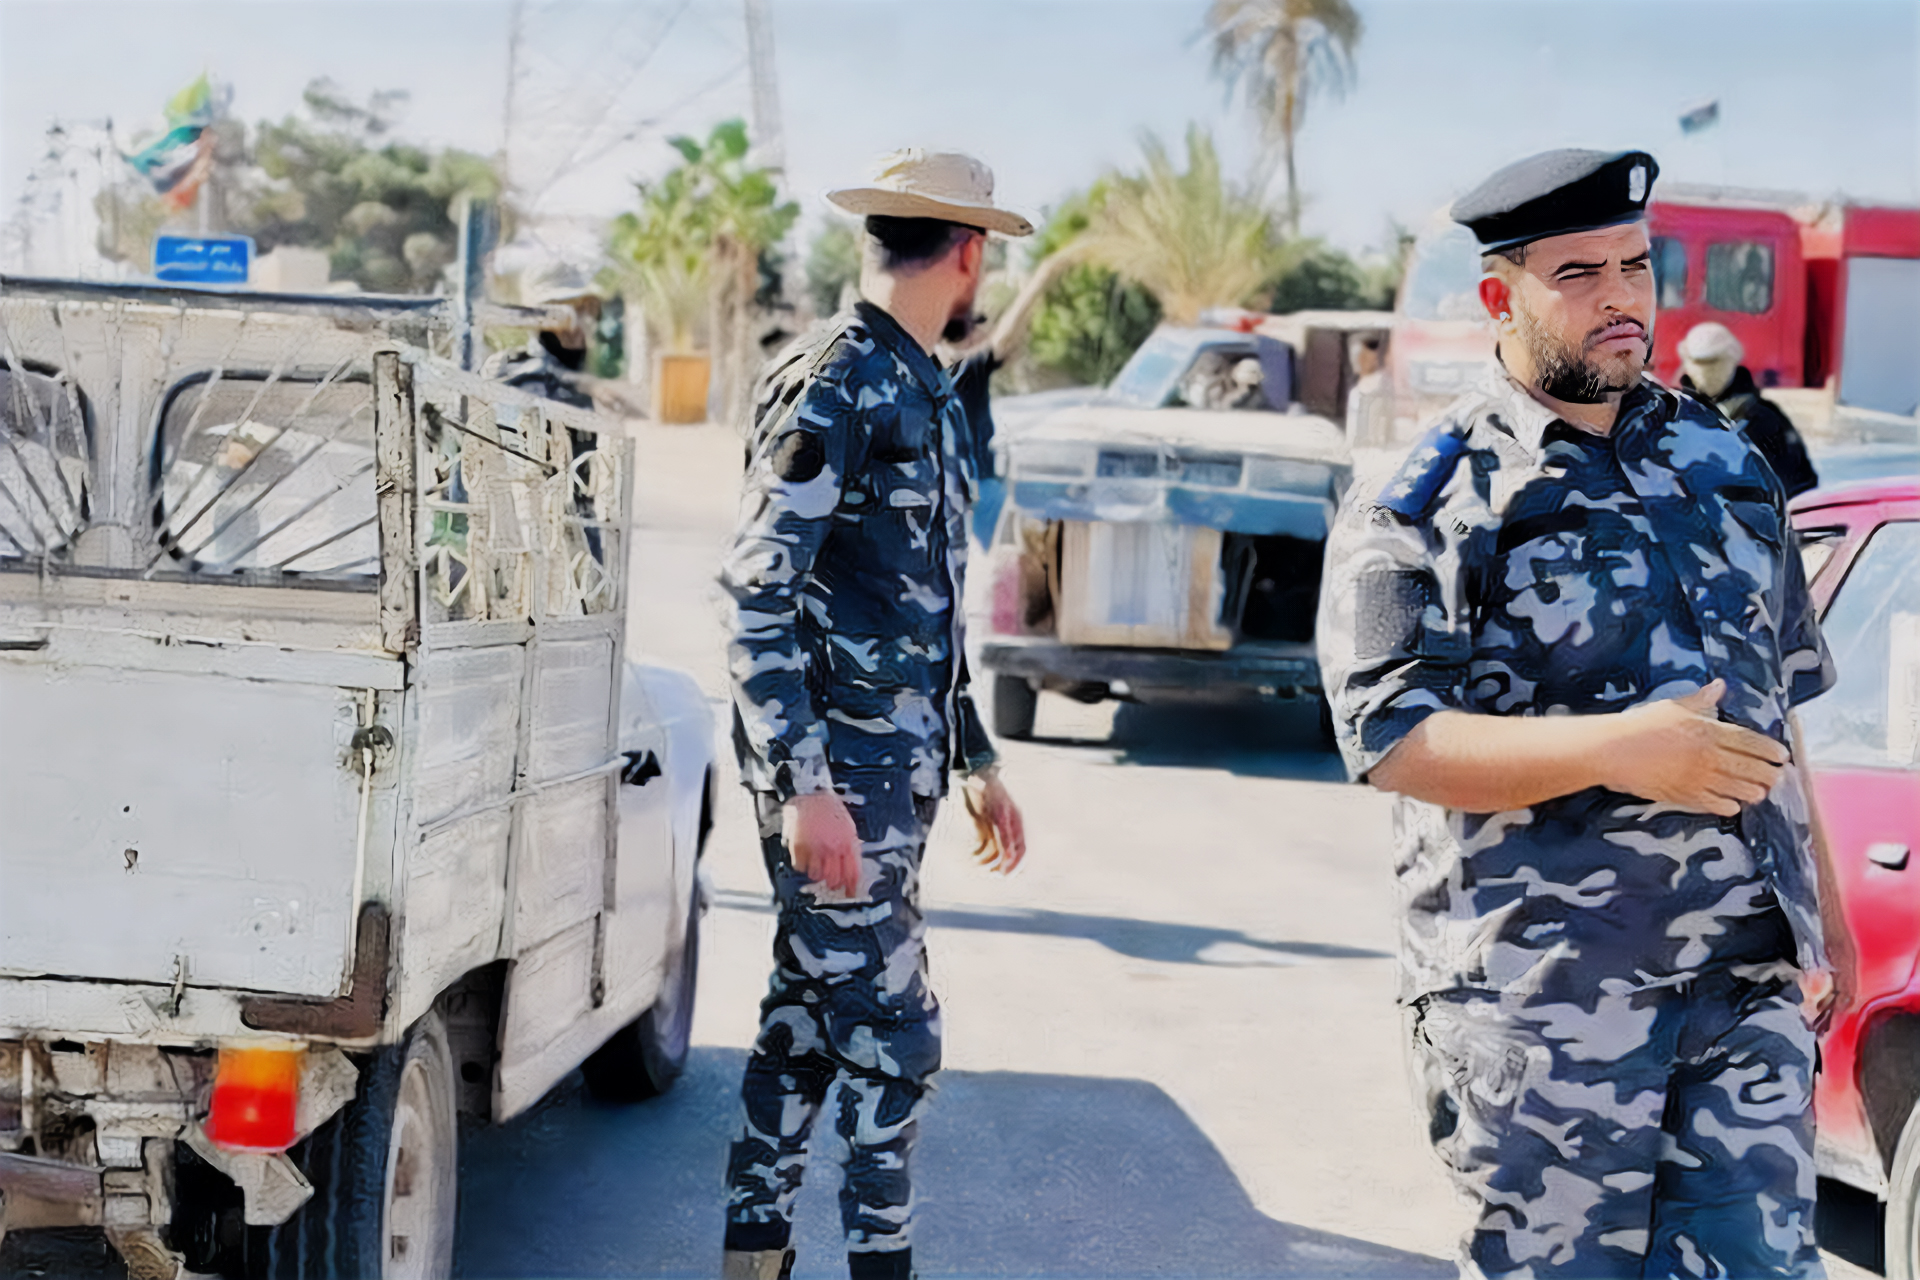 إغلاق معبر رأس جدير يقطع أوردة مدن تونسية وليبية | اقتصاد – البوكس نيوز